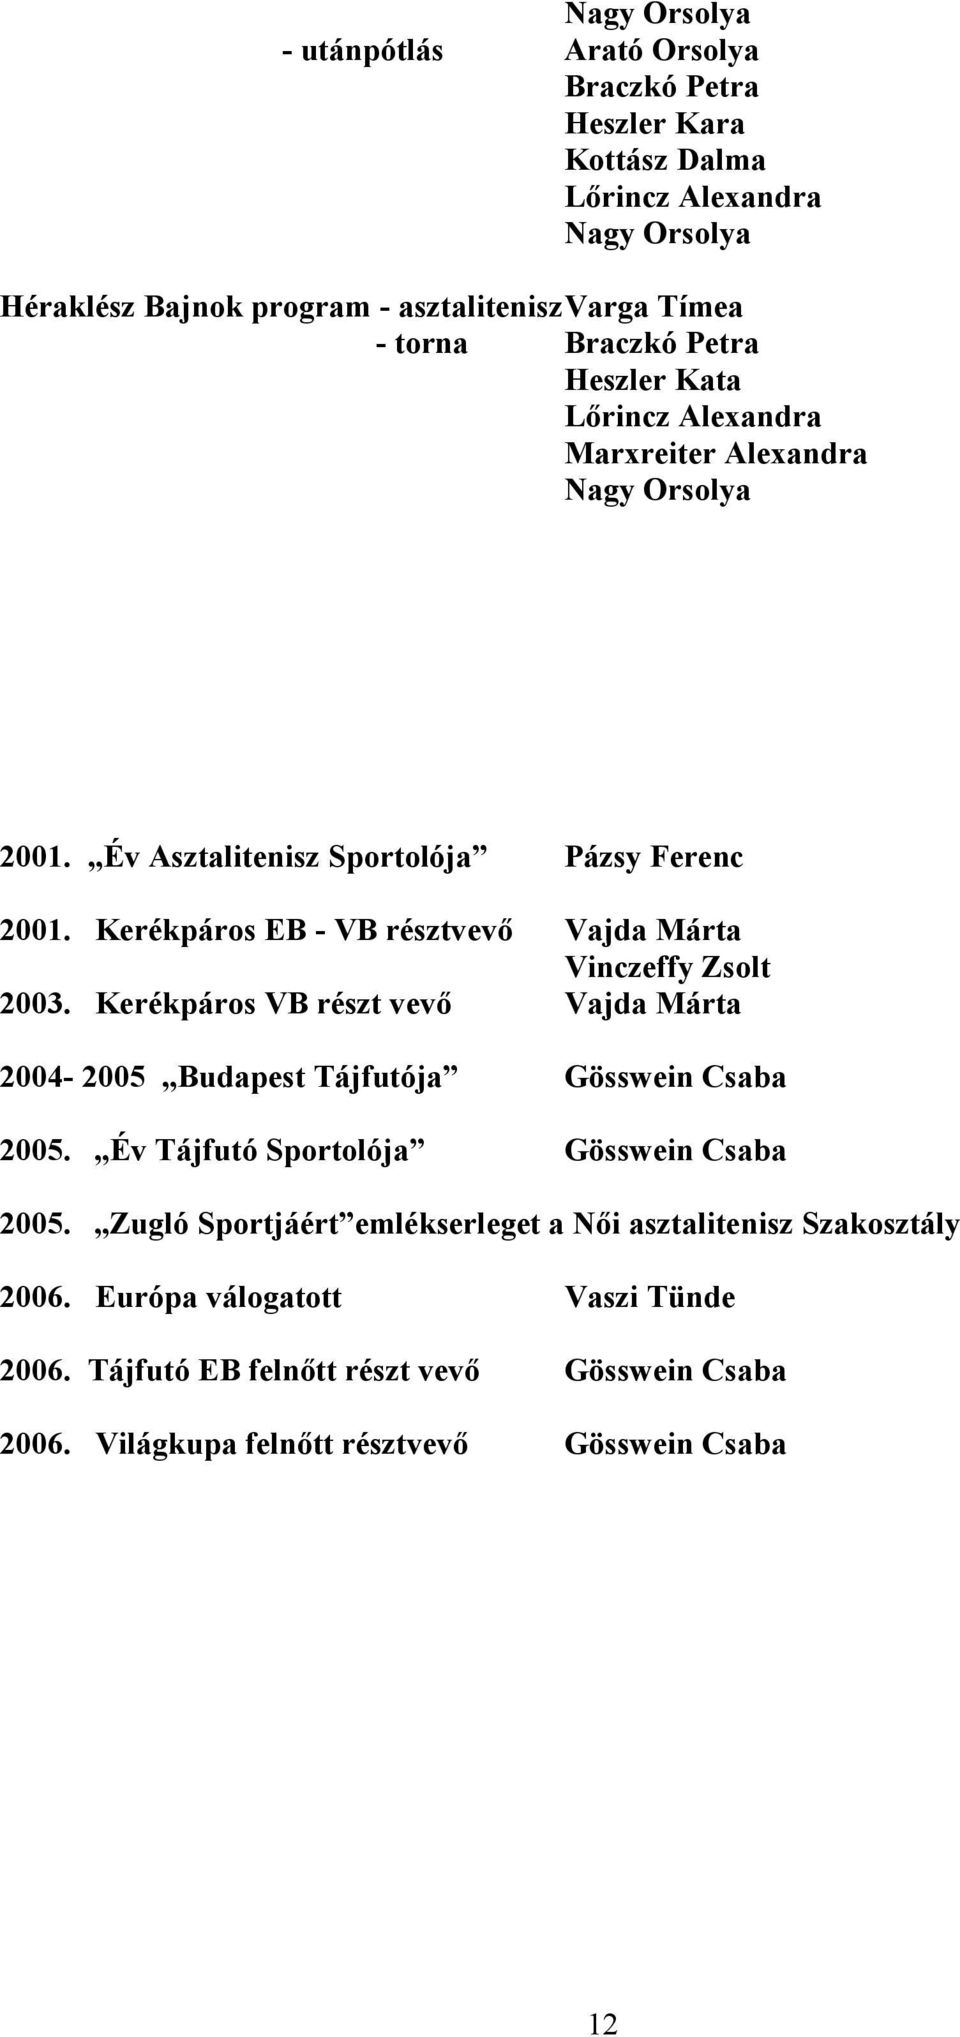 Kerékpáros EB - VB résztvevő Vajda Márta Vinczeffy Zsolt 2003. Kerékpáros VB részt vevő Vajda Márta 2004-2005 Budapest Tájfutója Gösswein Csaba 2005.